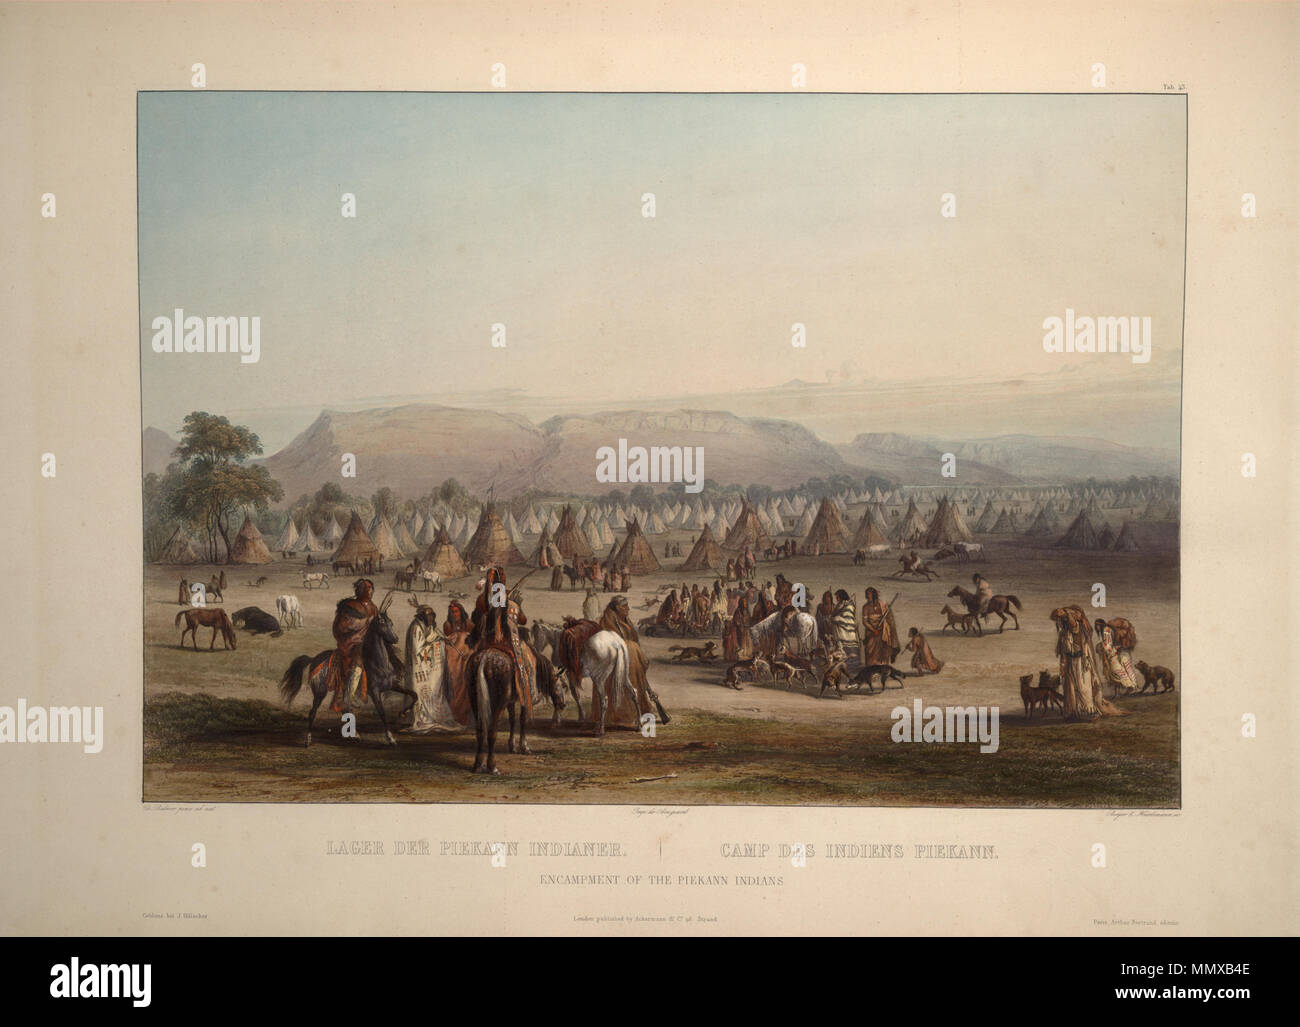 Indianer Aus Den 1890er Jahren Stockfotos und -bilder Kaufen - Alamy